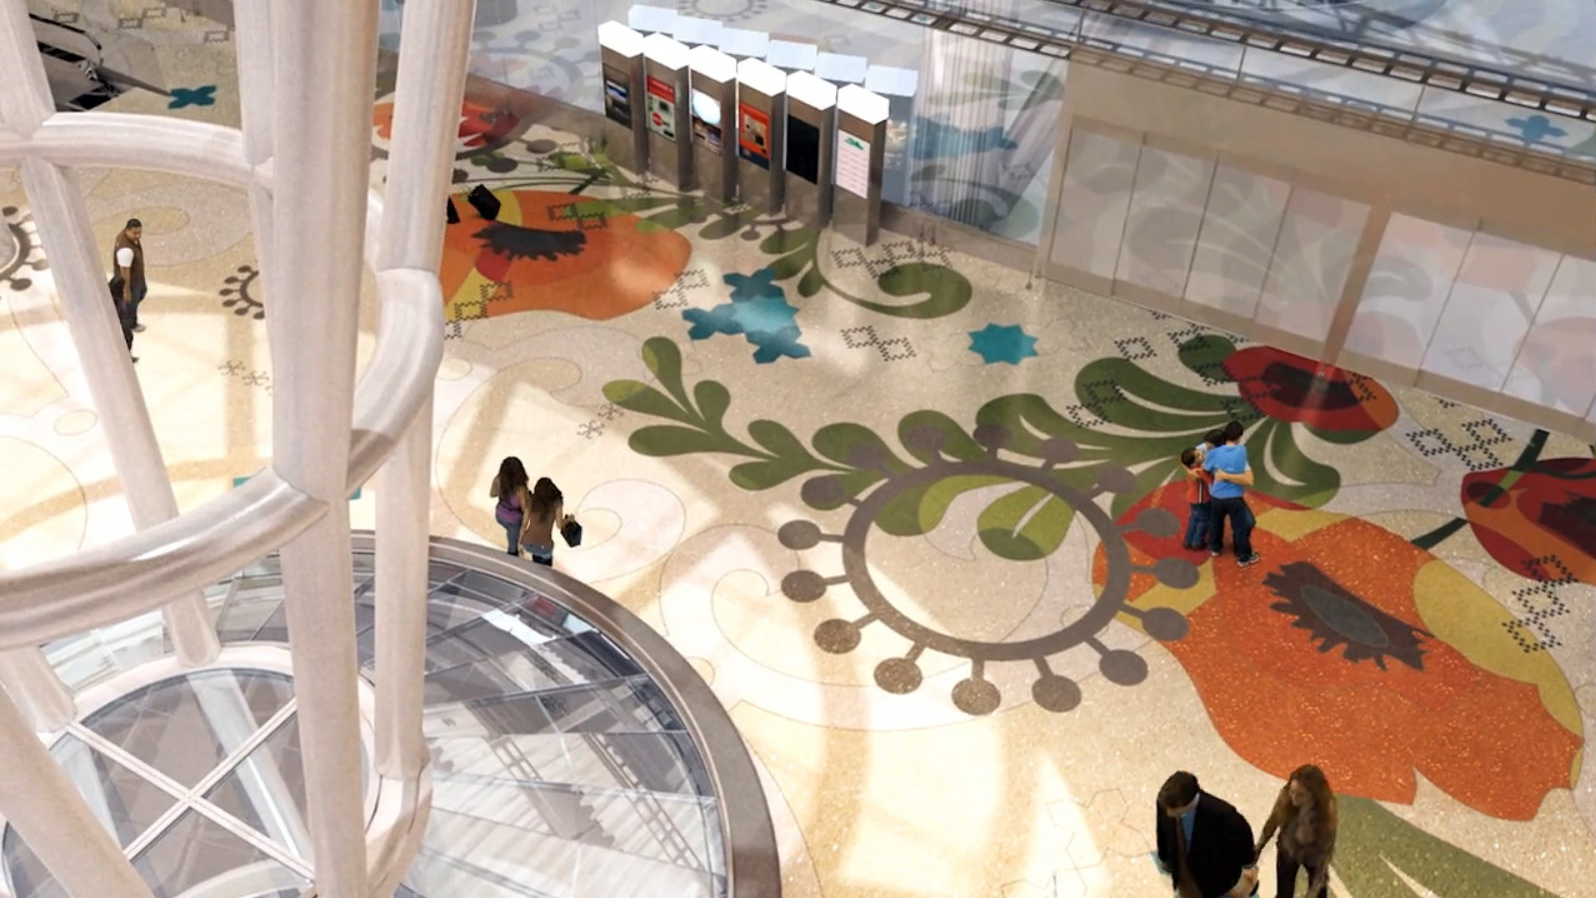 A rendering of Julie Chang's 'Secret Garden' terrazzo floor, as seen from above.